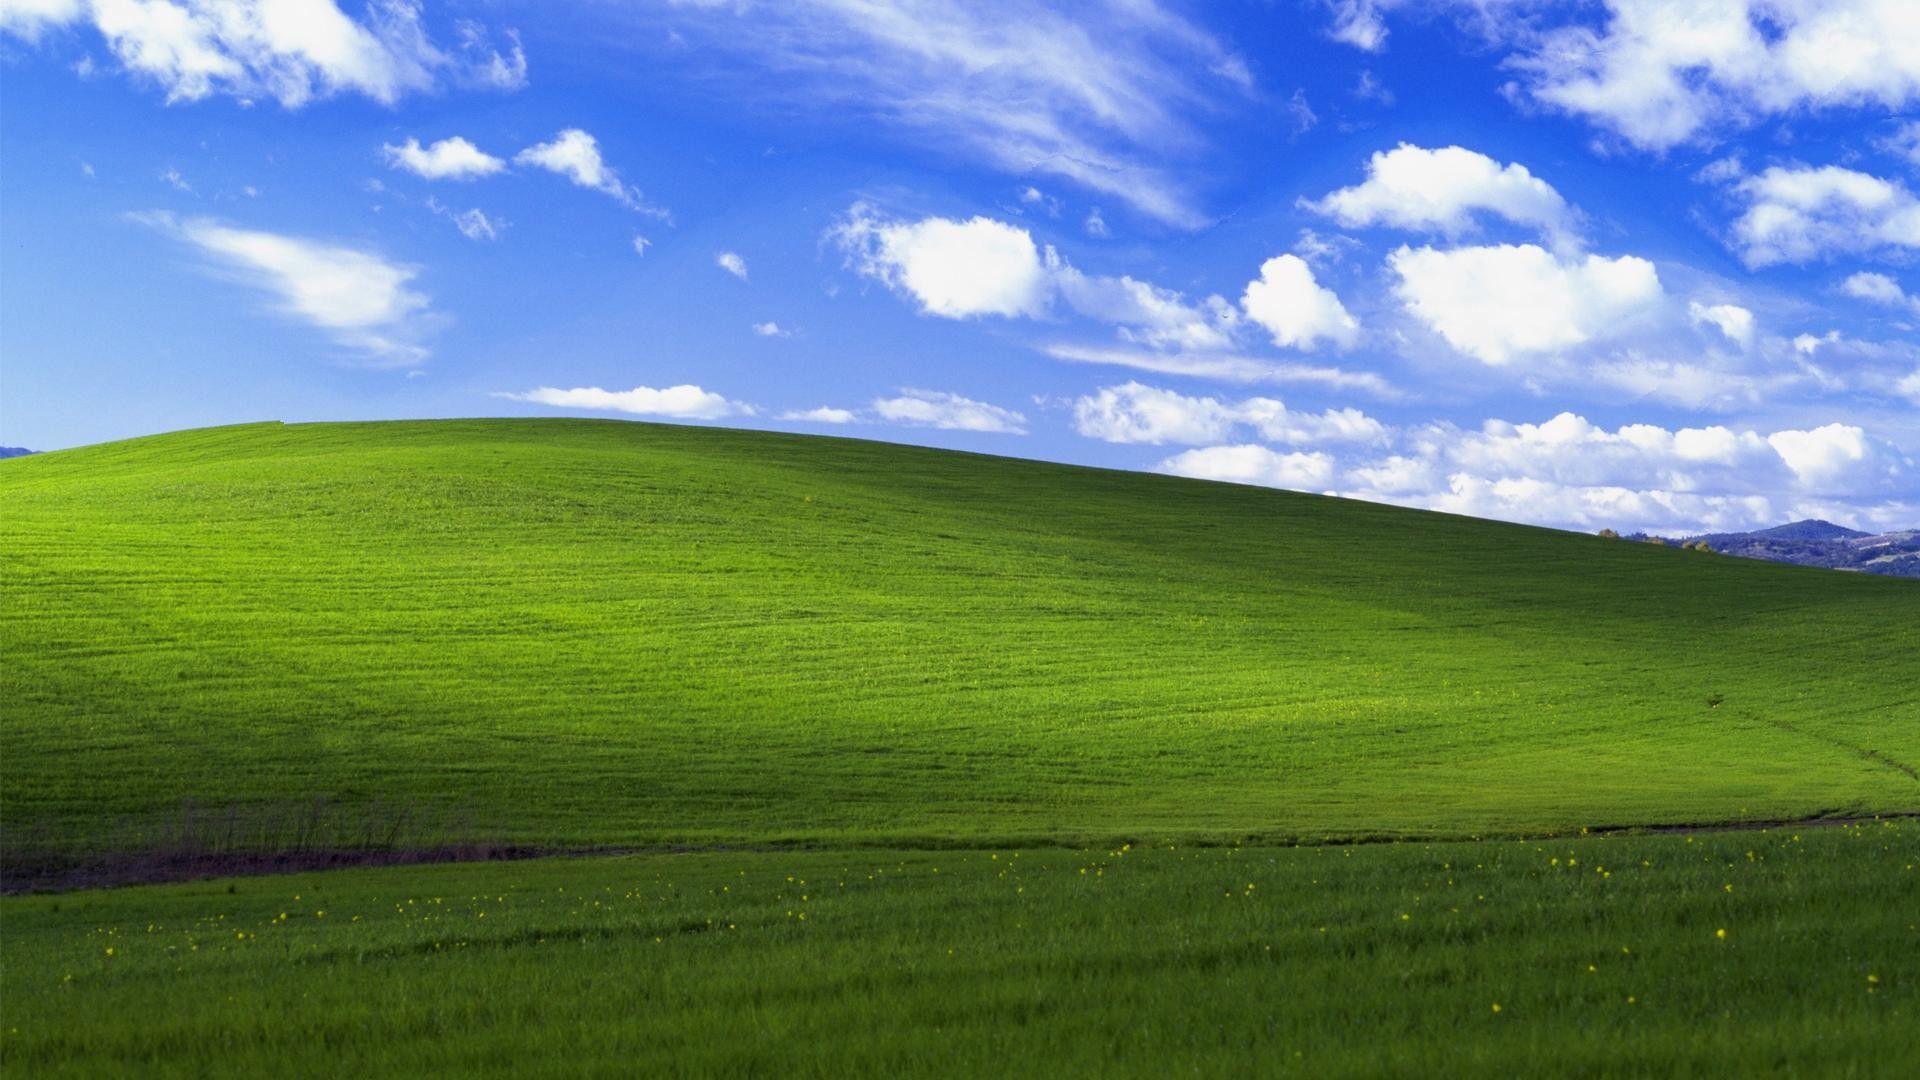 Hình nền Windows XP trên WallpaperDog mang đến cho bạn những trải nghiệm tuyệt vời với hàng nghìn bức ảnh nền HD hoàn toàn miễn phí. Bạn có thể chọn lựa từ các chủ đề khác nhau như thiên nhiên, động vật, phong cảnh... Tất cả những gì bạn cần là mở tài khoản và trải nghiệm ngay.